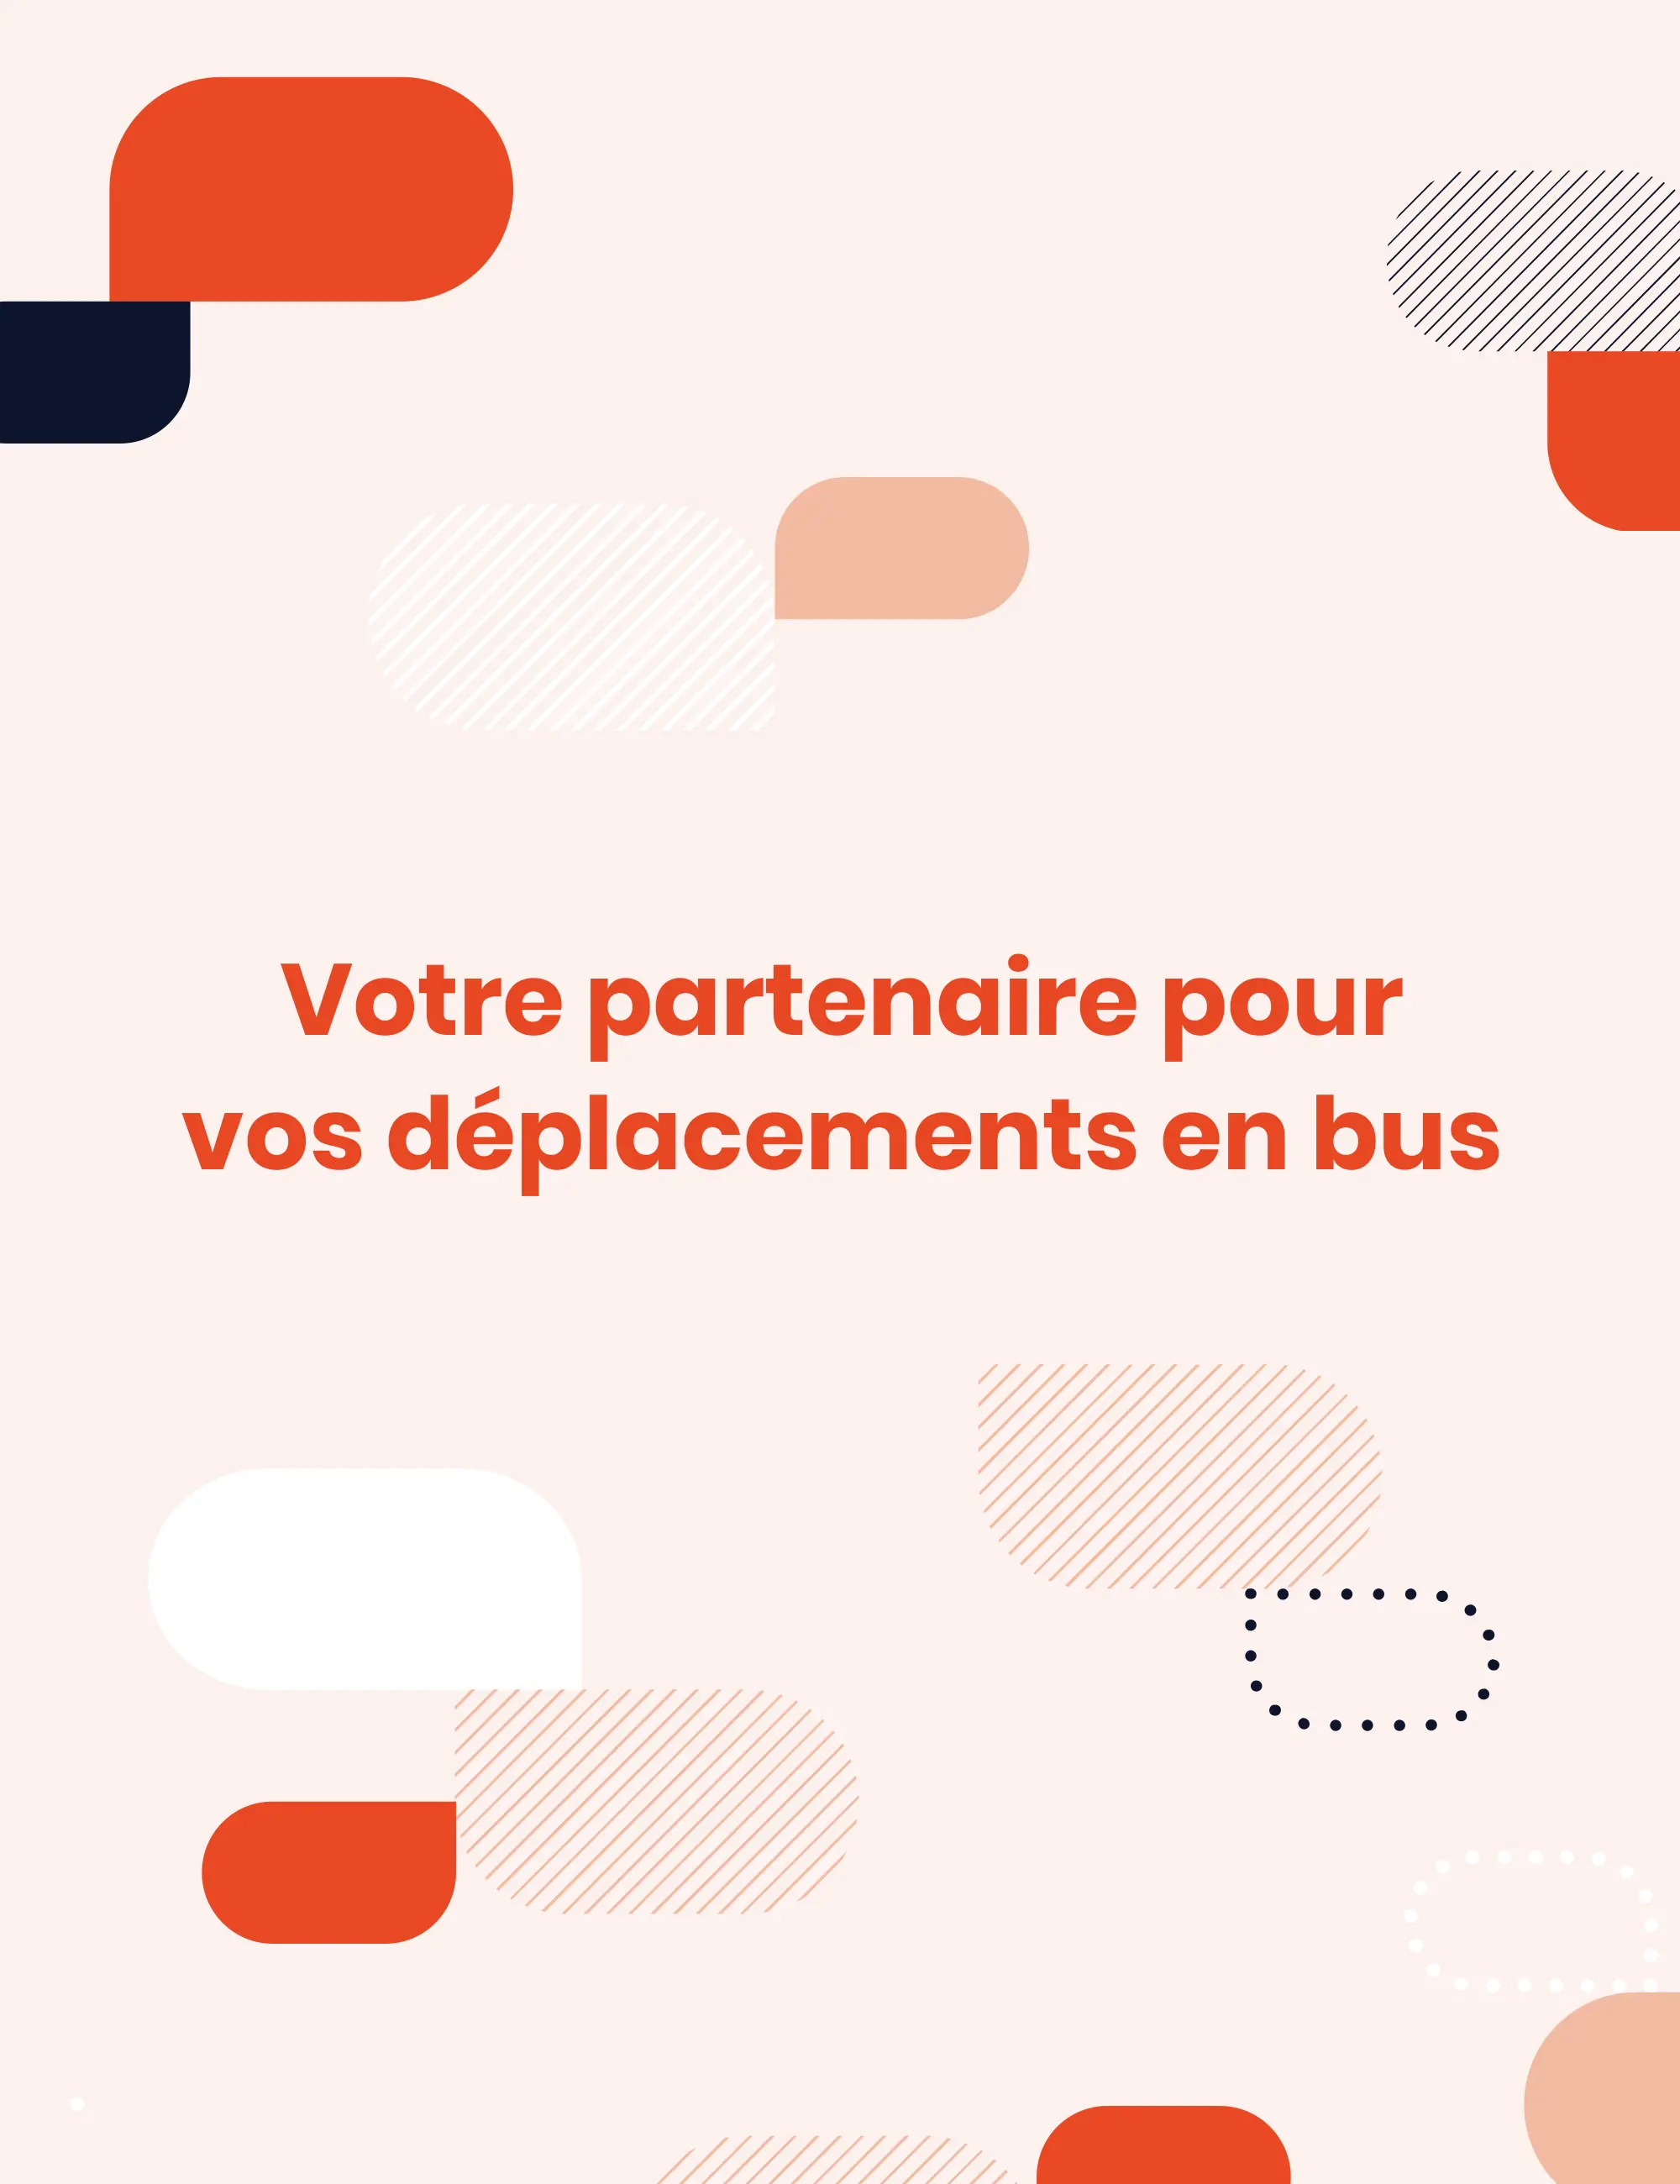 Baseline de Saybus, Votre partenaire pour vos déplacements en bus, entourée de bulles illustrées